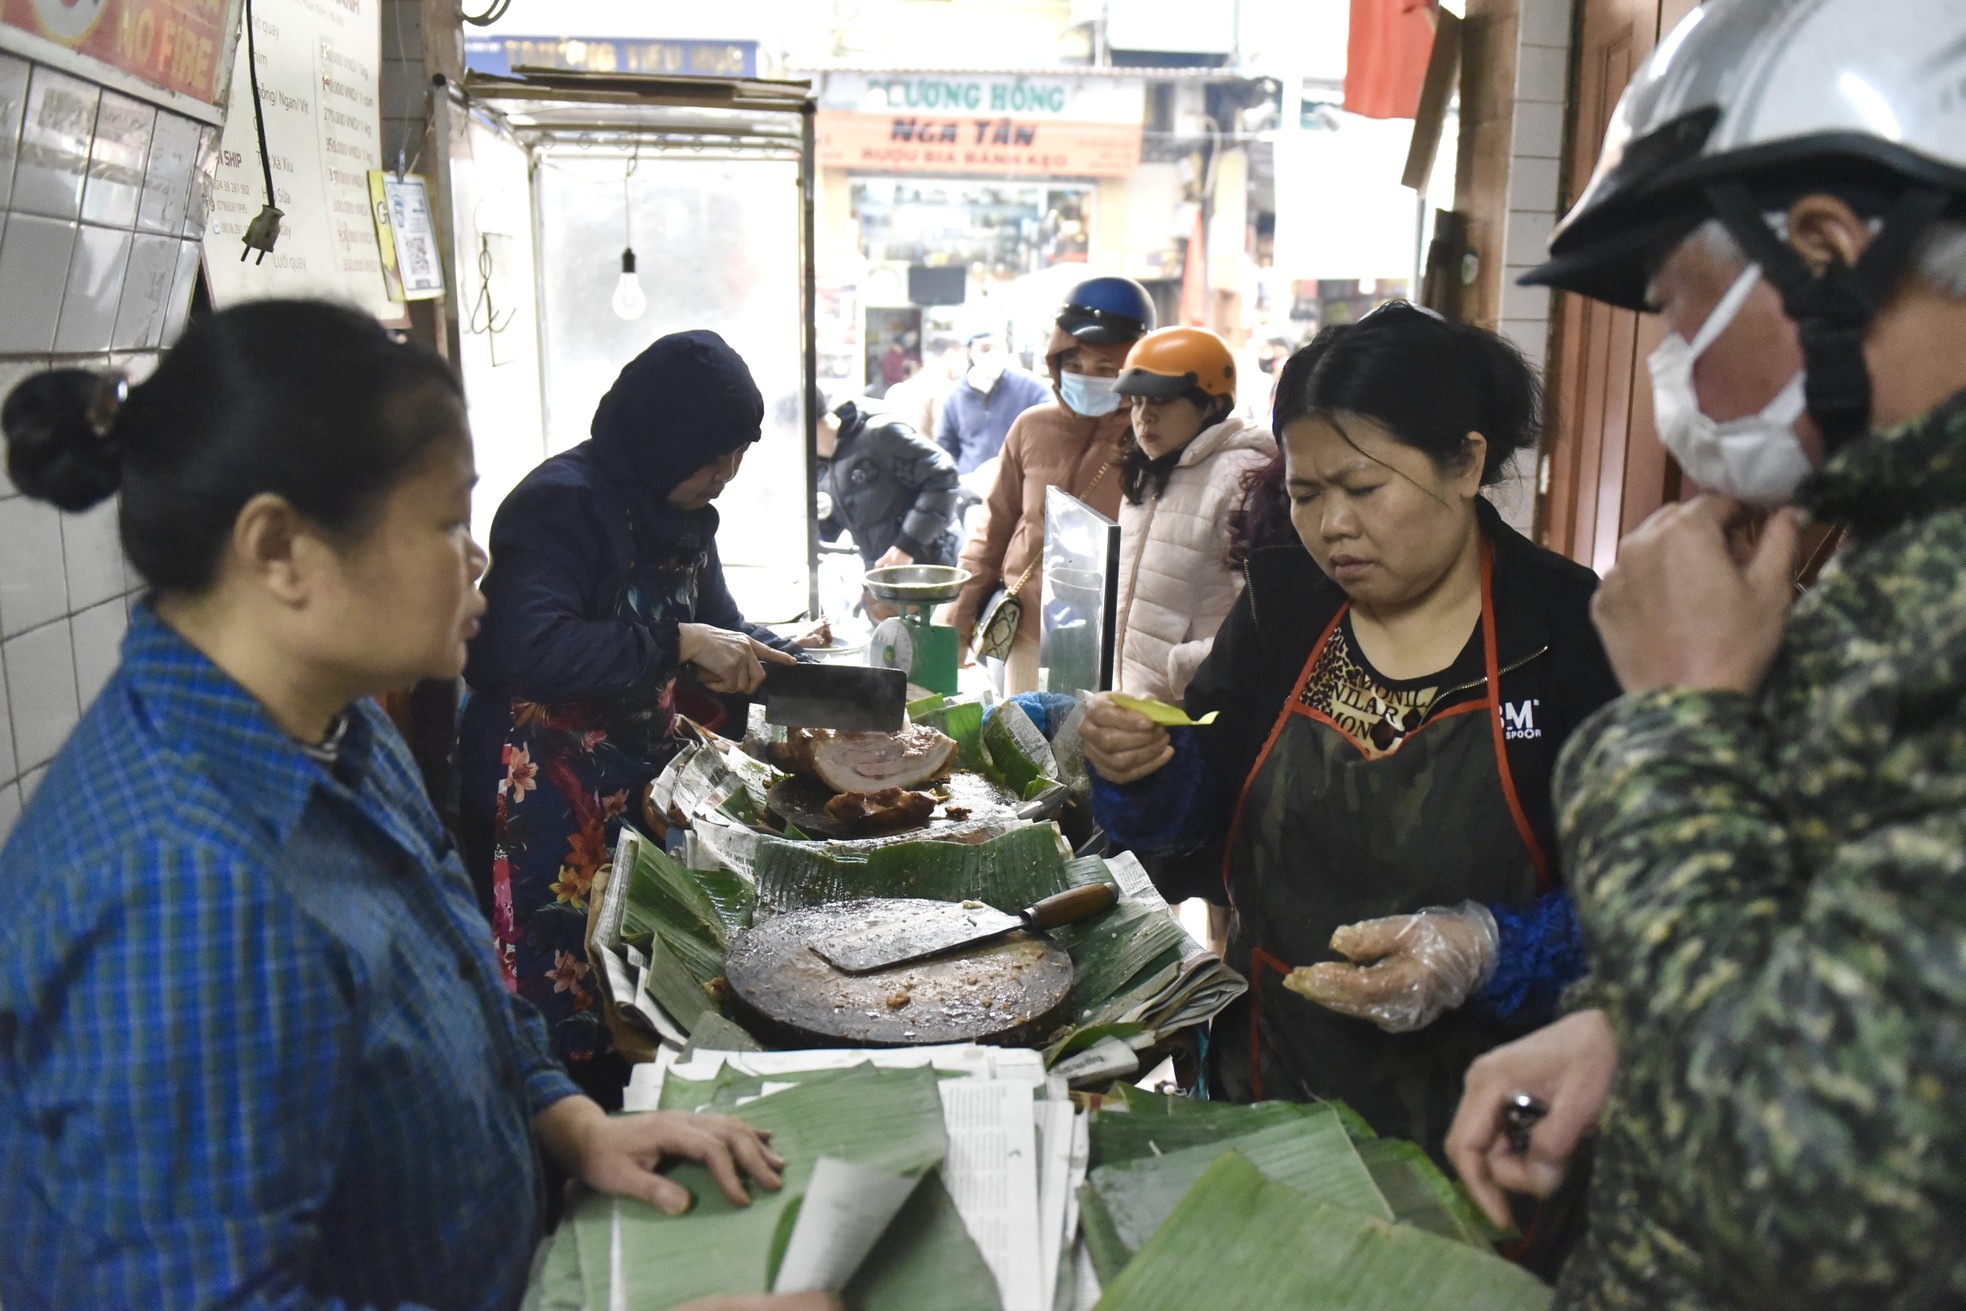 Xếp hàng dài giữa trưa mua heo quay ngày vía Thần Tài tại Hà Nội - Ảnh 4.